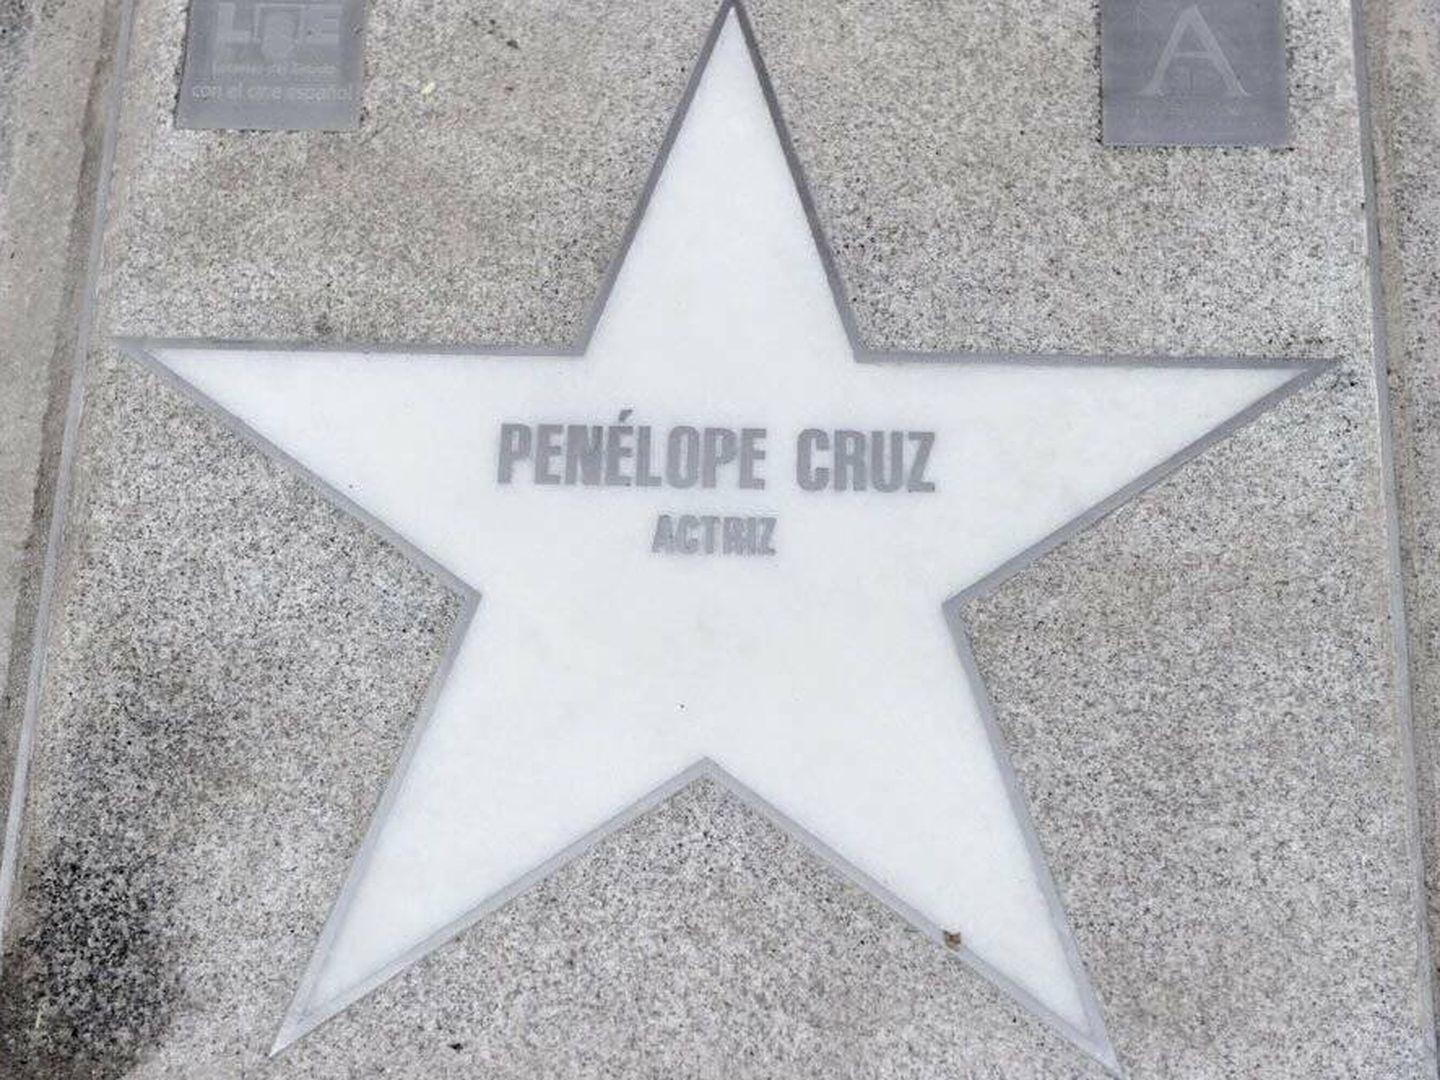 La estrella de Penélope Cruz en el Paseo de la Fama de Madrid. (Twitter)